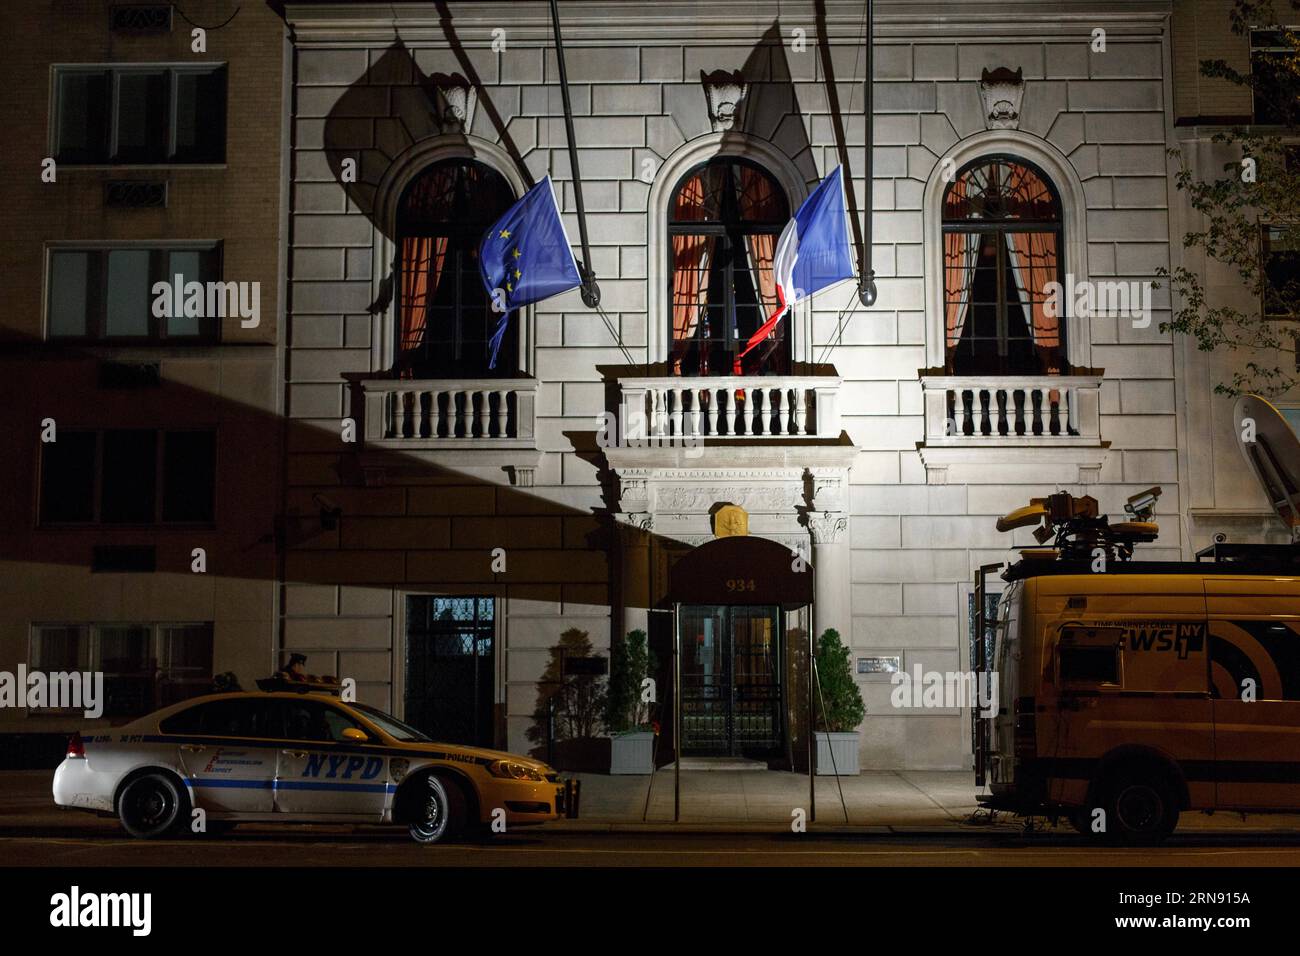 La photo prise le 13 novembre 2015 montre des drapeaux abaissés au Consulat général de France sur la Cinquième Avenue à New York. Plus de 100 personnes ont été tuées dans une prise d'otages massive dans une salle de concert parisienne vendredi et beaucoup plus ont été redoutées morts dans une série d'attentats à la bombe et de fusillades.) États-Unis-NEW YORK-FRANCH CONSULAT LixMuzi PUBLICATIONxNOTxINxCHN photo prise LE 13 2015 novembre montre des drapeaux abaissés AU consulat général de France SUR la Cinquième Avenue à New York plus de 100 célébrités ont été TUÉES dans une prise d'otage de masse dans une salle de concert de Paris vendredi et BEAUCOUP plus ont été redoutées Dead in A. série d'attentats à la bombe et de fusillades Banque D'Images